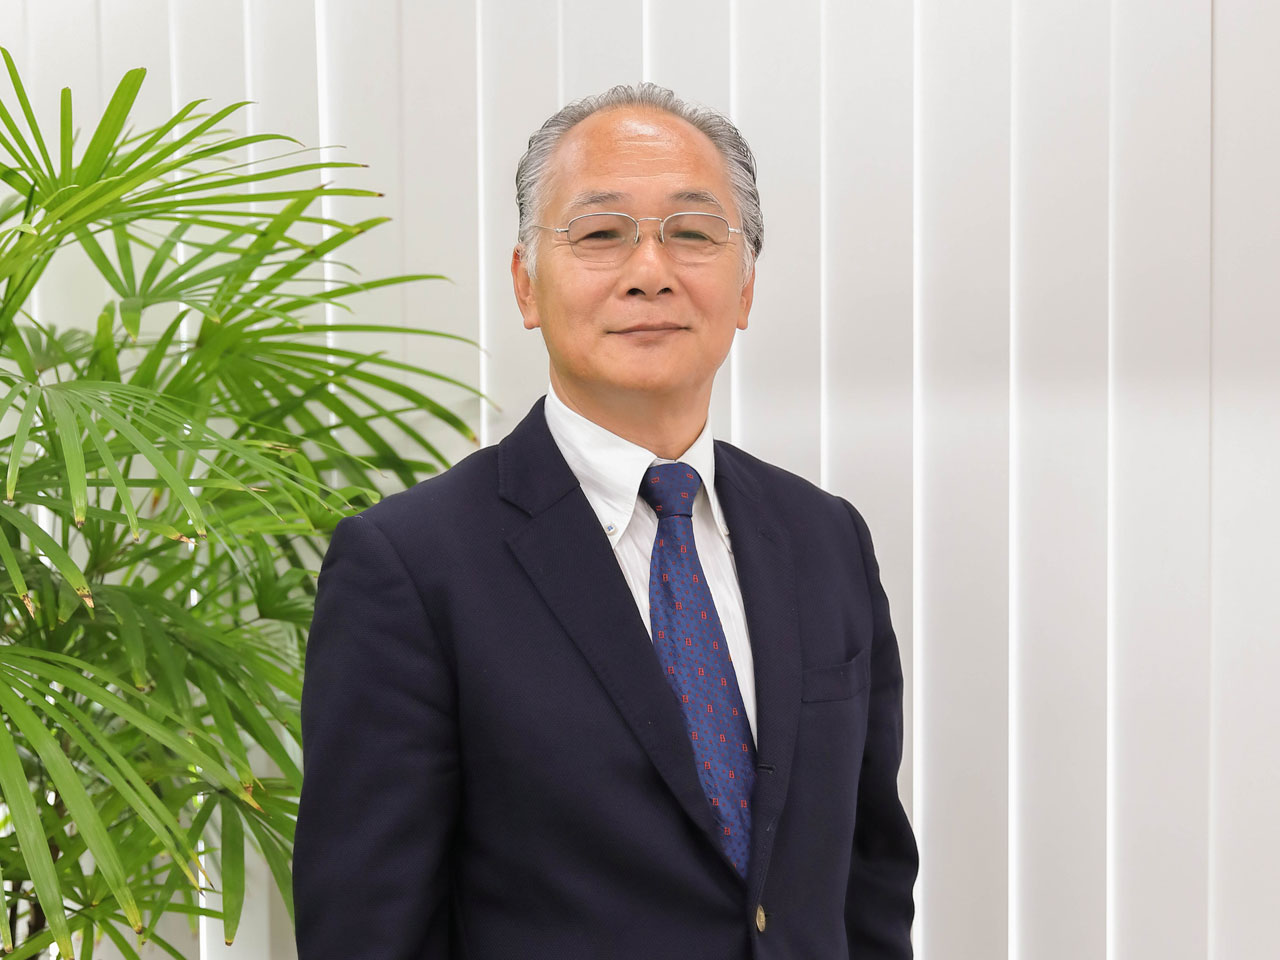 同社の創業は、2000年3月。ソフトウェアとハードウェアの両領域で技術開発支援を手掛ける企業でエンジニアを務めていた代表取締役社長の増田博司氏が設立した。